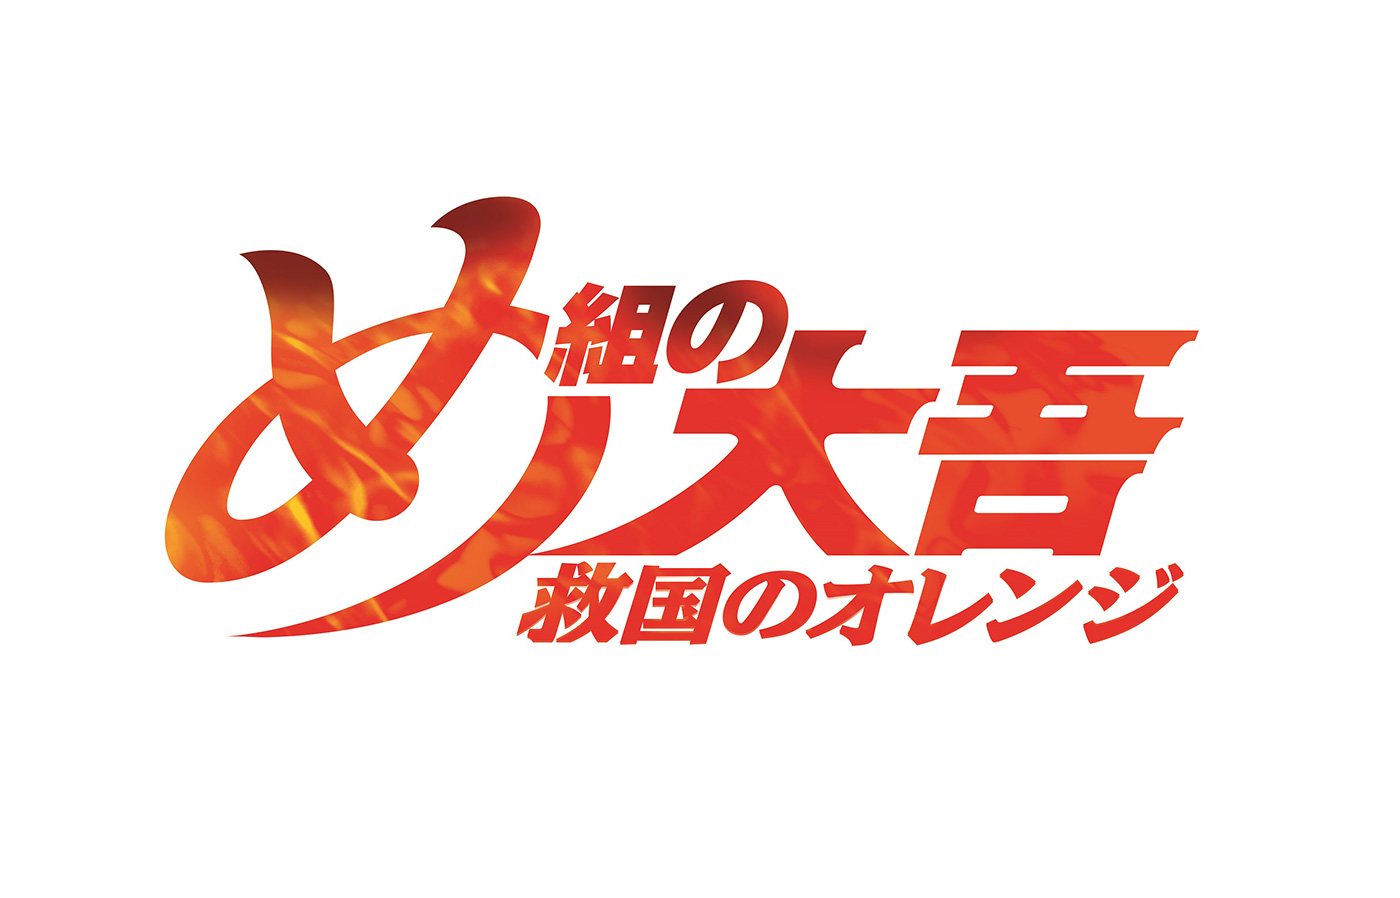 『め組の大吾 救国のオレンジ』ロゴ